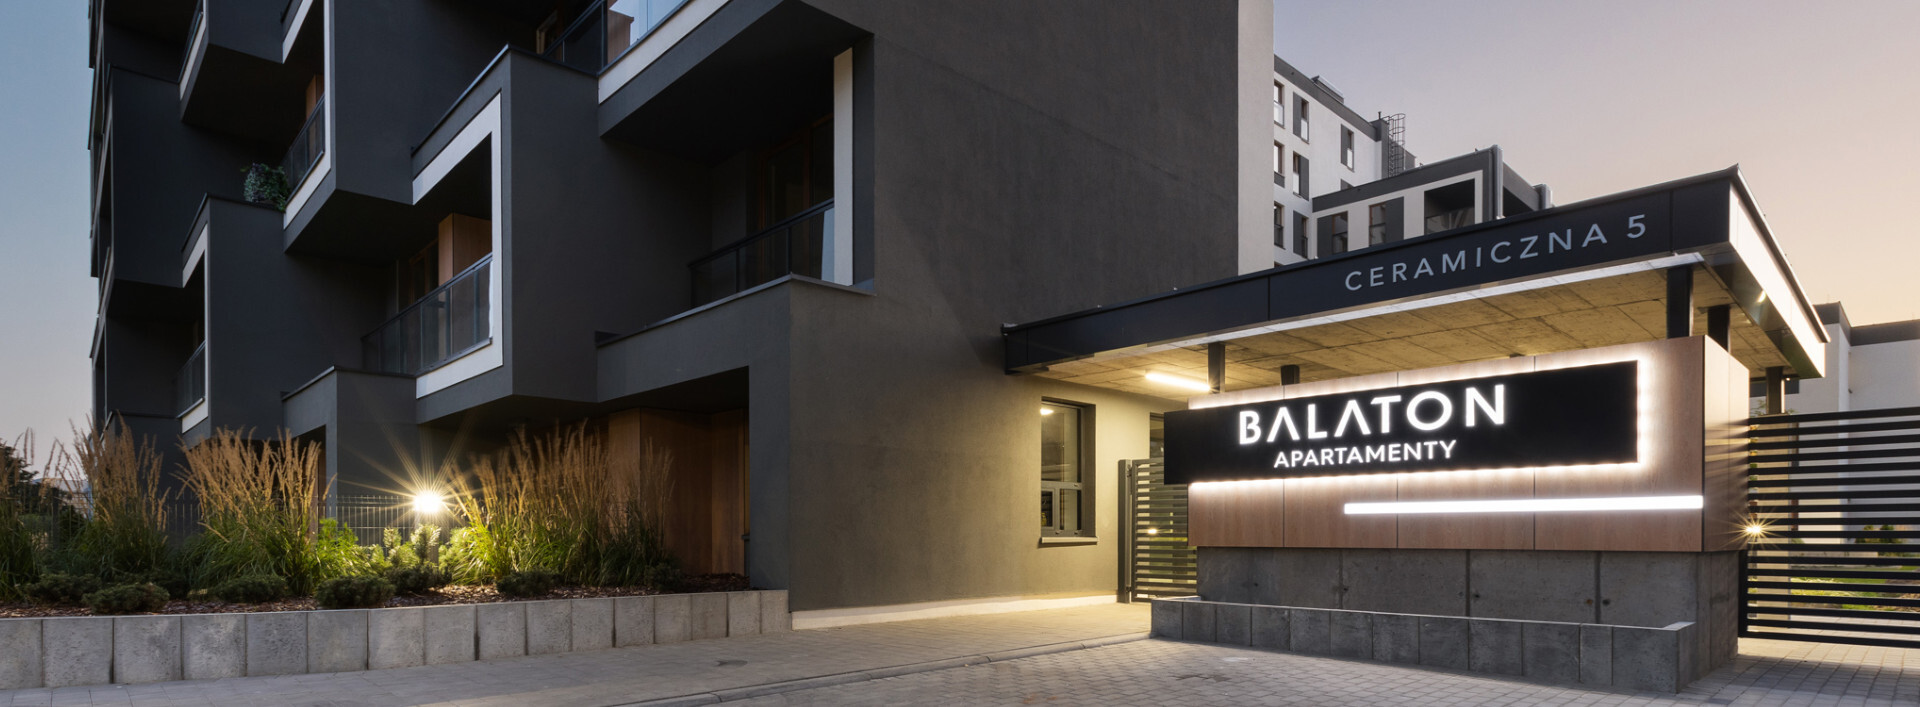 Balaton Apartamenty - wejście